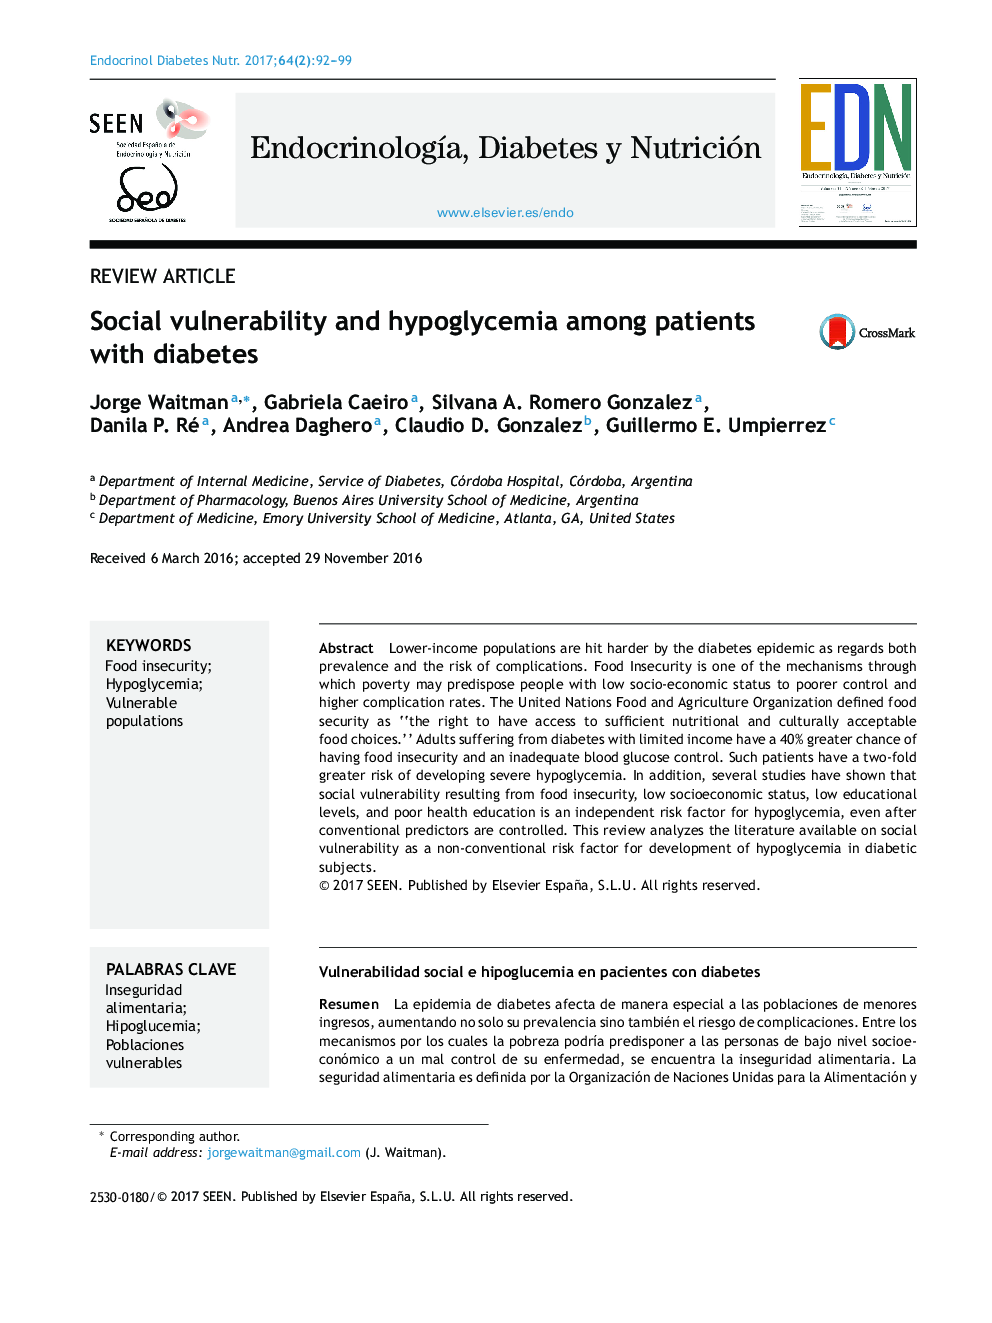 آسیب پذیری اجتماعی و هیپوگلیسمی در بیماران مبتلا به دیابت 